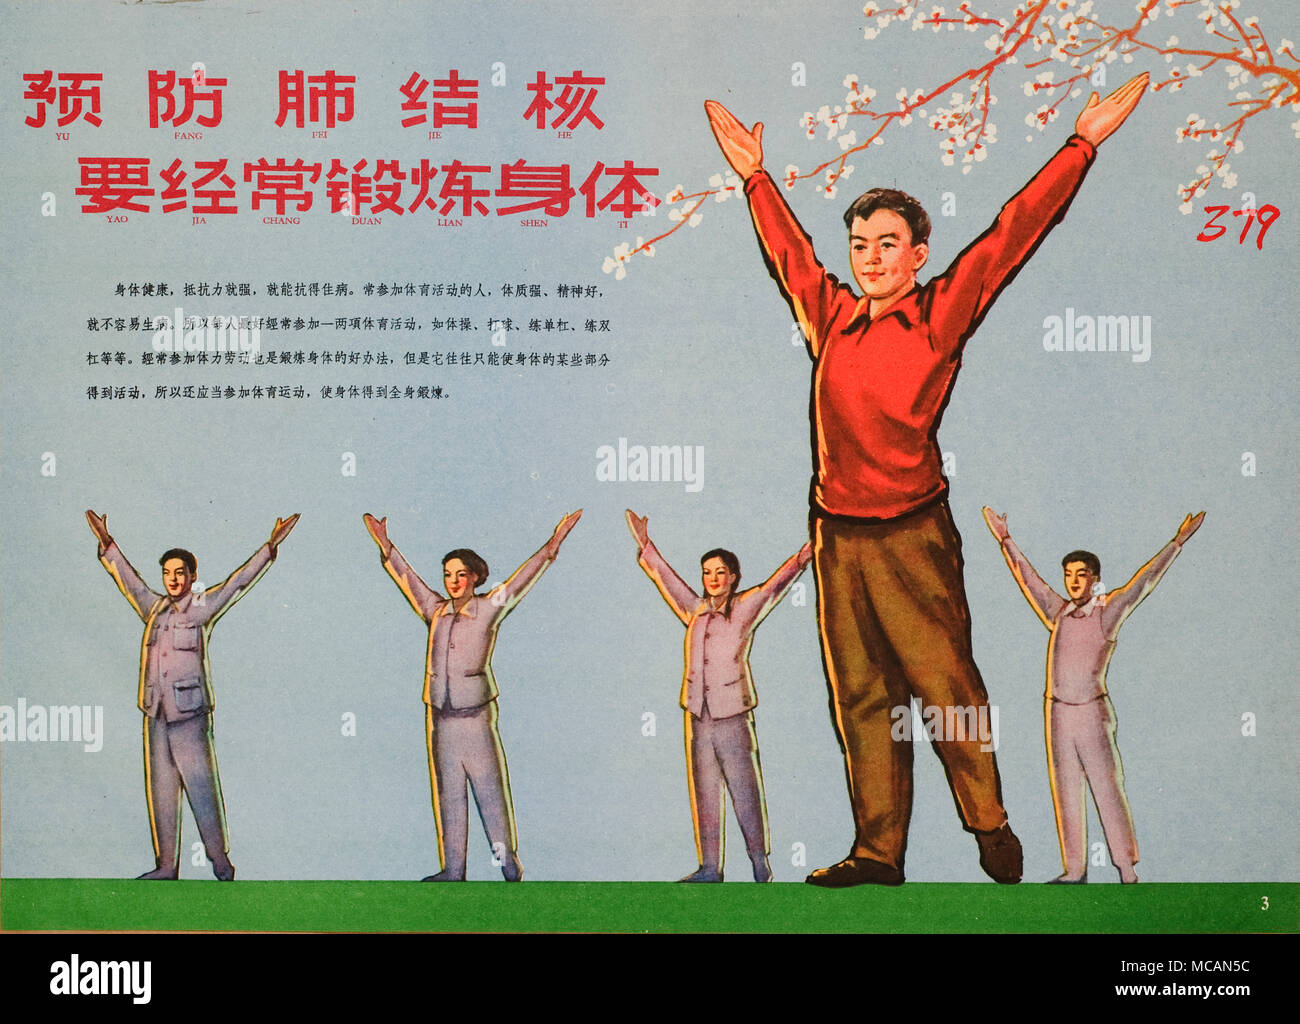 Un hombre en una camisa roja y pantalón café hace un ejercicio de  estiramiento en el exterior. Detrás de él hay 2 hombres y 2 mujeres en una  fila haciendo el mismo